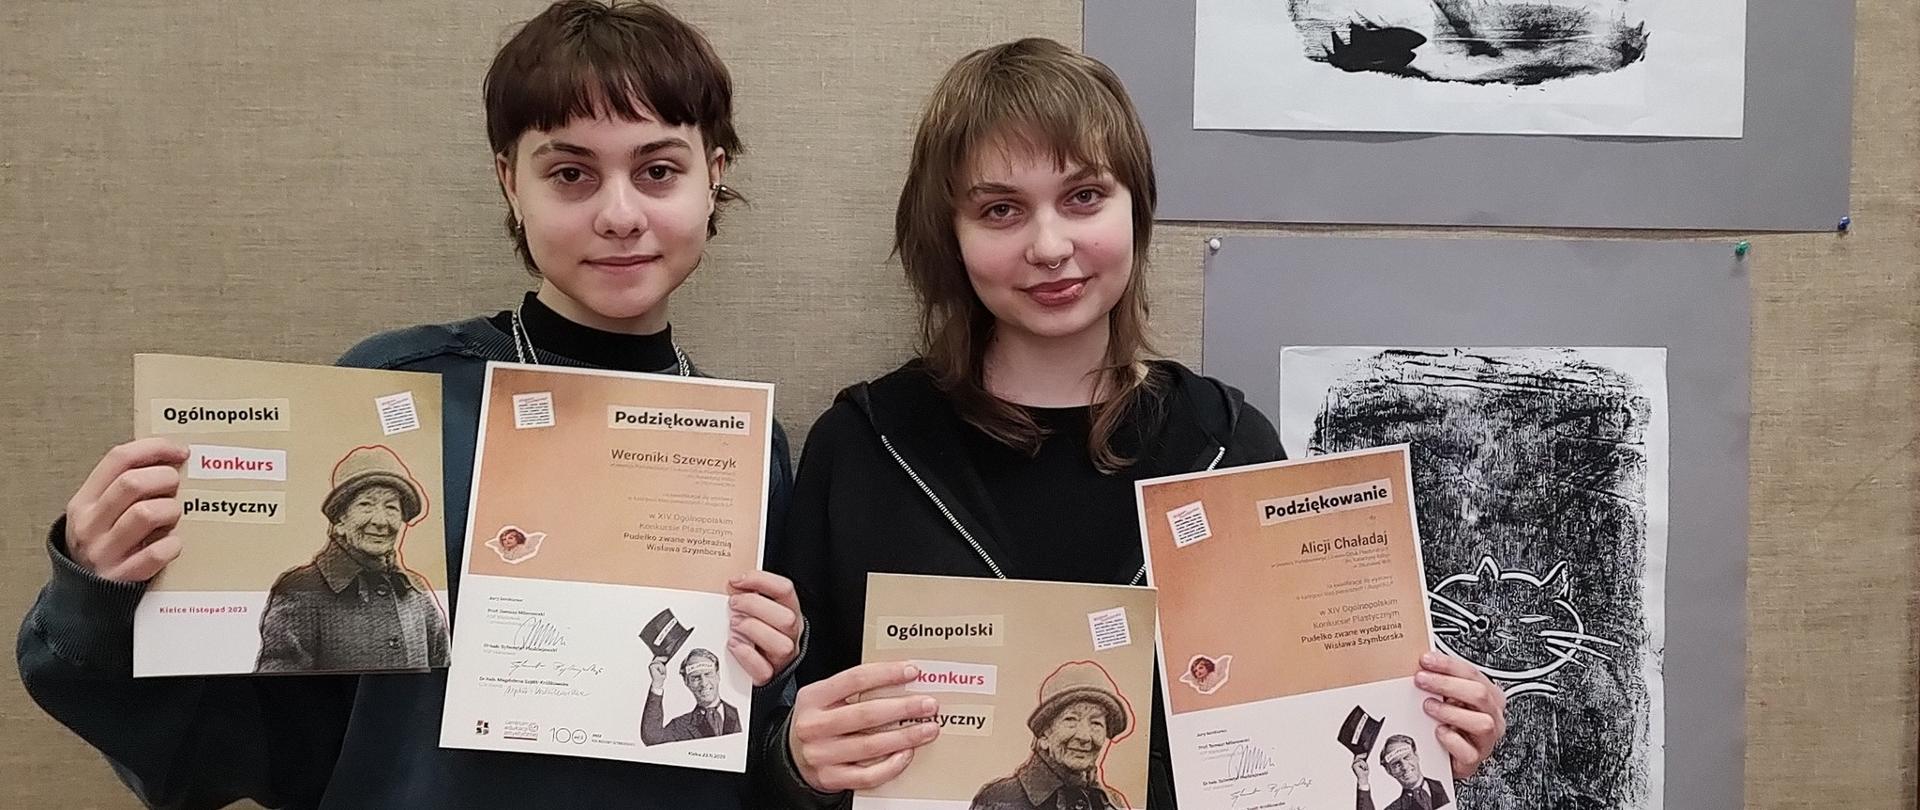 Na zdjęciu dwie uczennice prezentujące podziękowania za udział w konkursie i katalogi wystawy pokonkursowej, w tle prace konkursowe uczennic